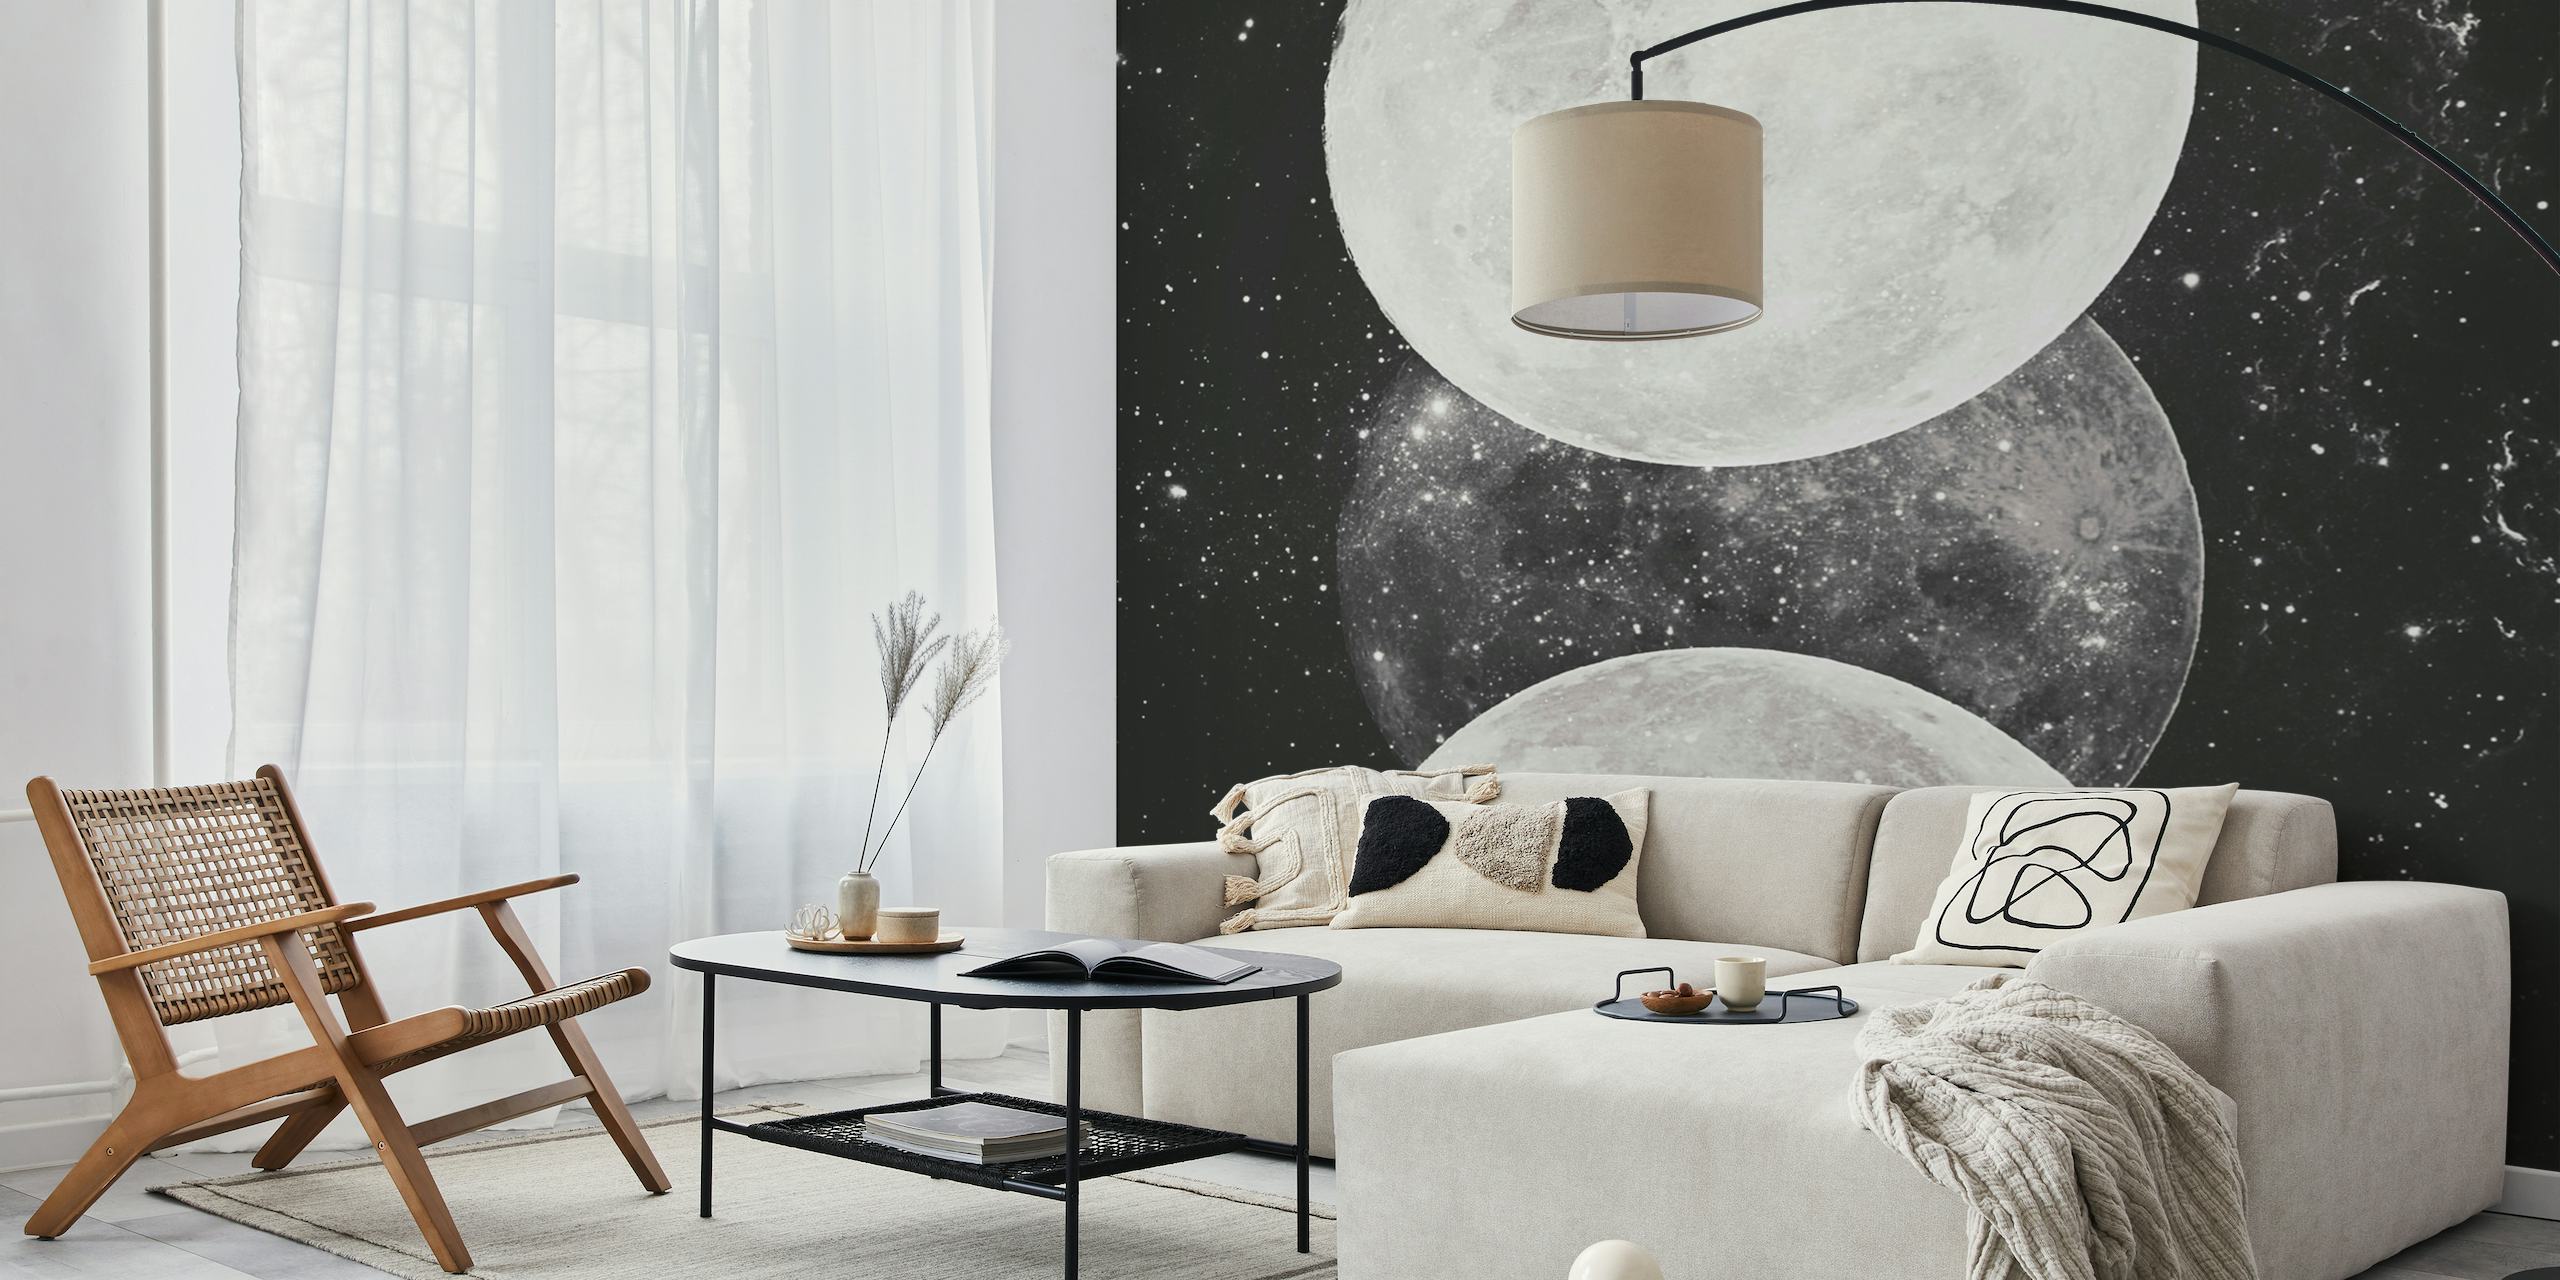 Monochromatische maanstanden tegen een muurschildering met sterrenhemel